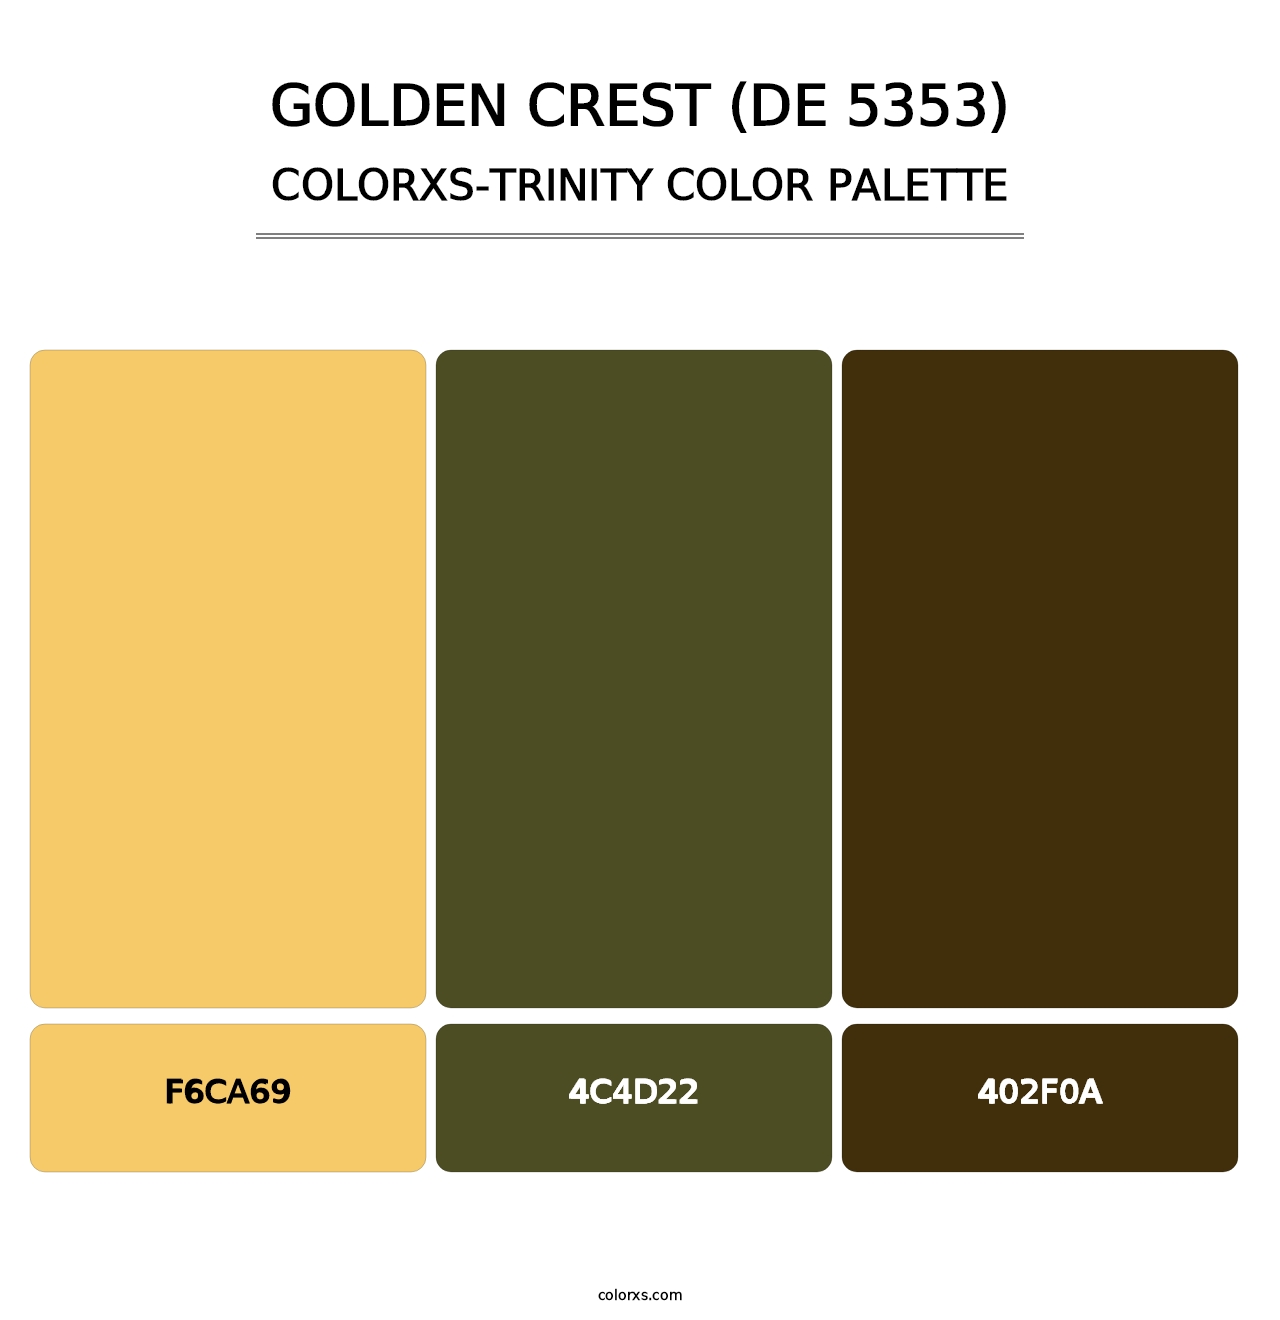 Golden Crest (DE 5353) - Colorxs Trinity Palette